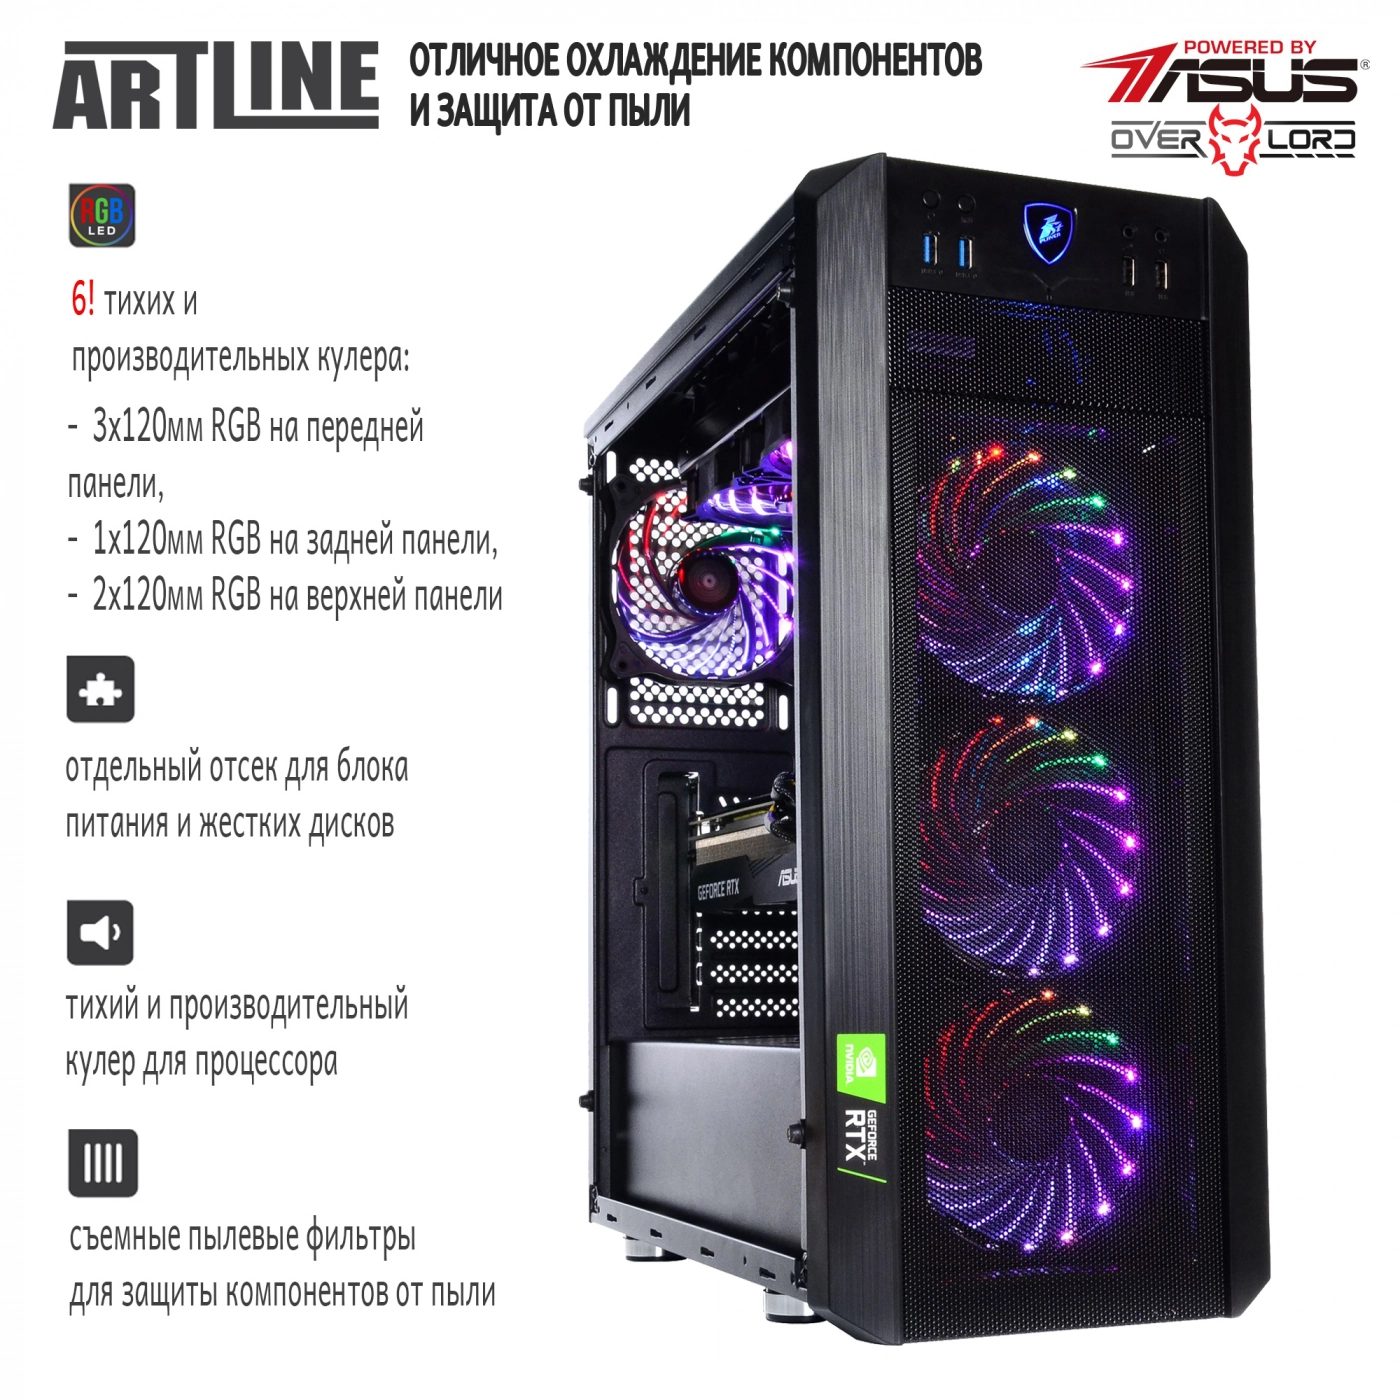 Купить Компьютер ARTLINE Gaming X98v18 - фото 4